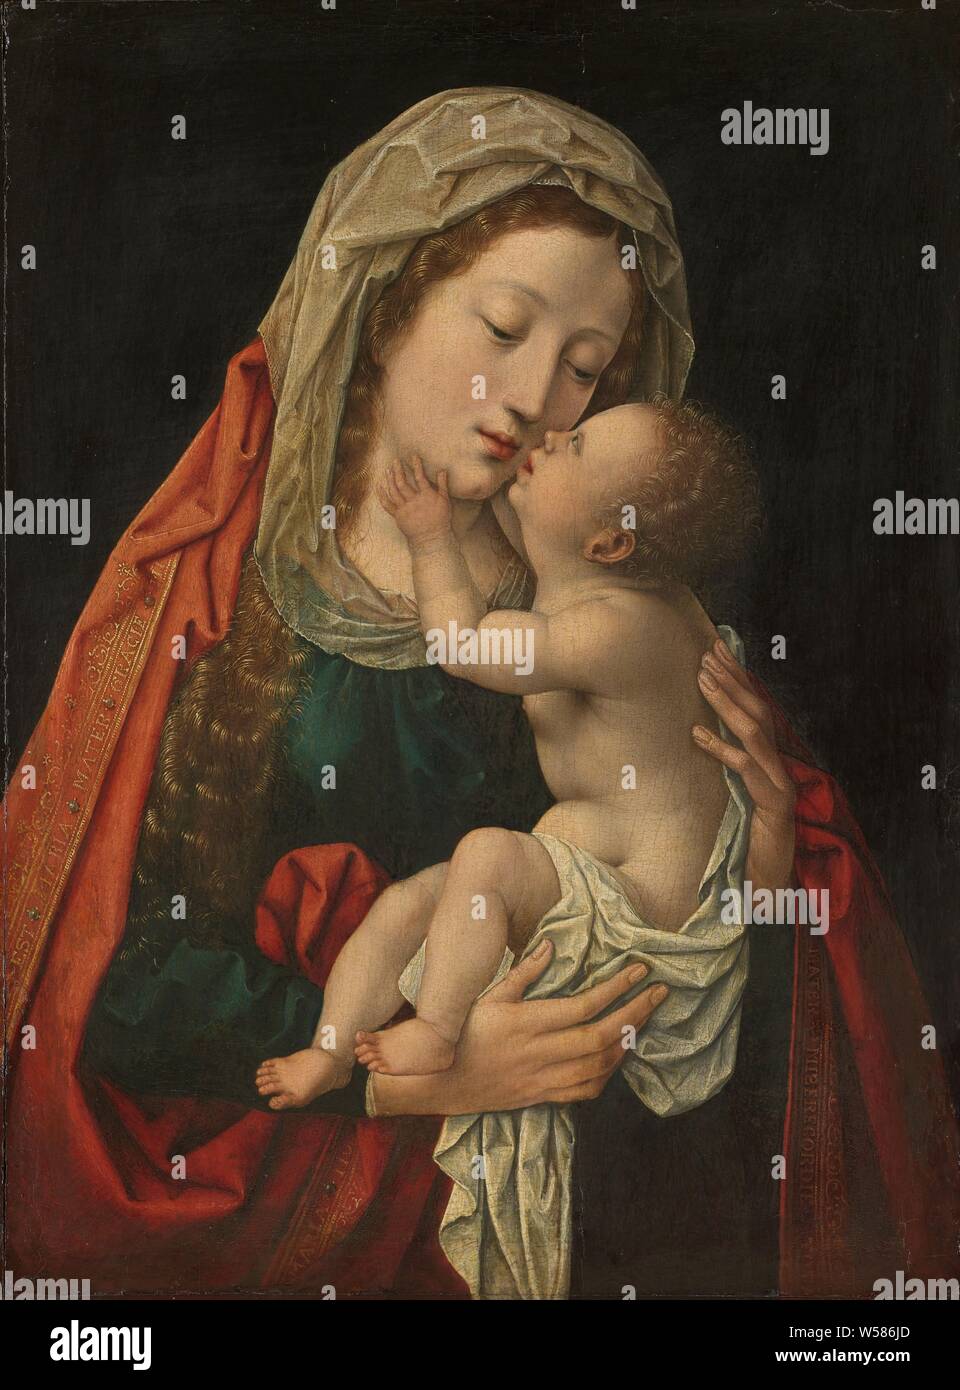 La Vierge et l'enfant, Maria avec enfant. Marie, à mi-chemin, avec le Christ enfant dans ses bras se lever pour embrasser sa mère., Bernard van Orley (atelier de), ch. 1520 - c. 1530, tableau de bord, de la peinture à l'huile (peinture), support : H 37 cm × w 27,8 cm Banque D'Images